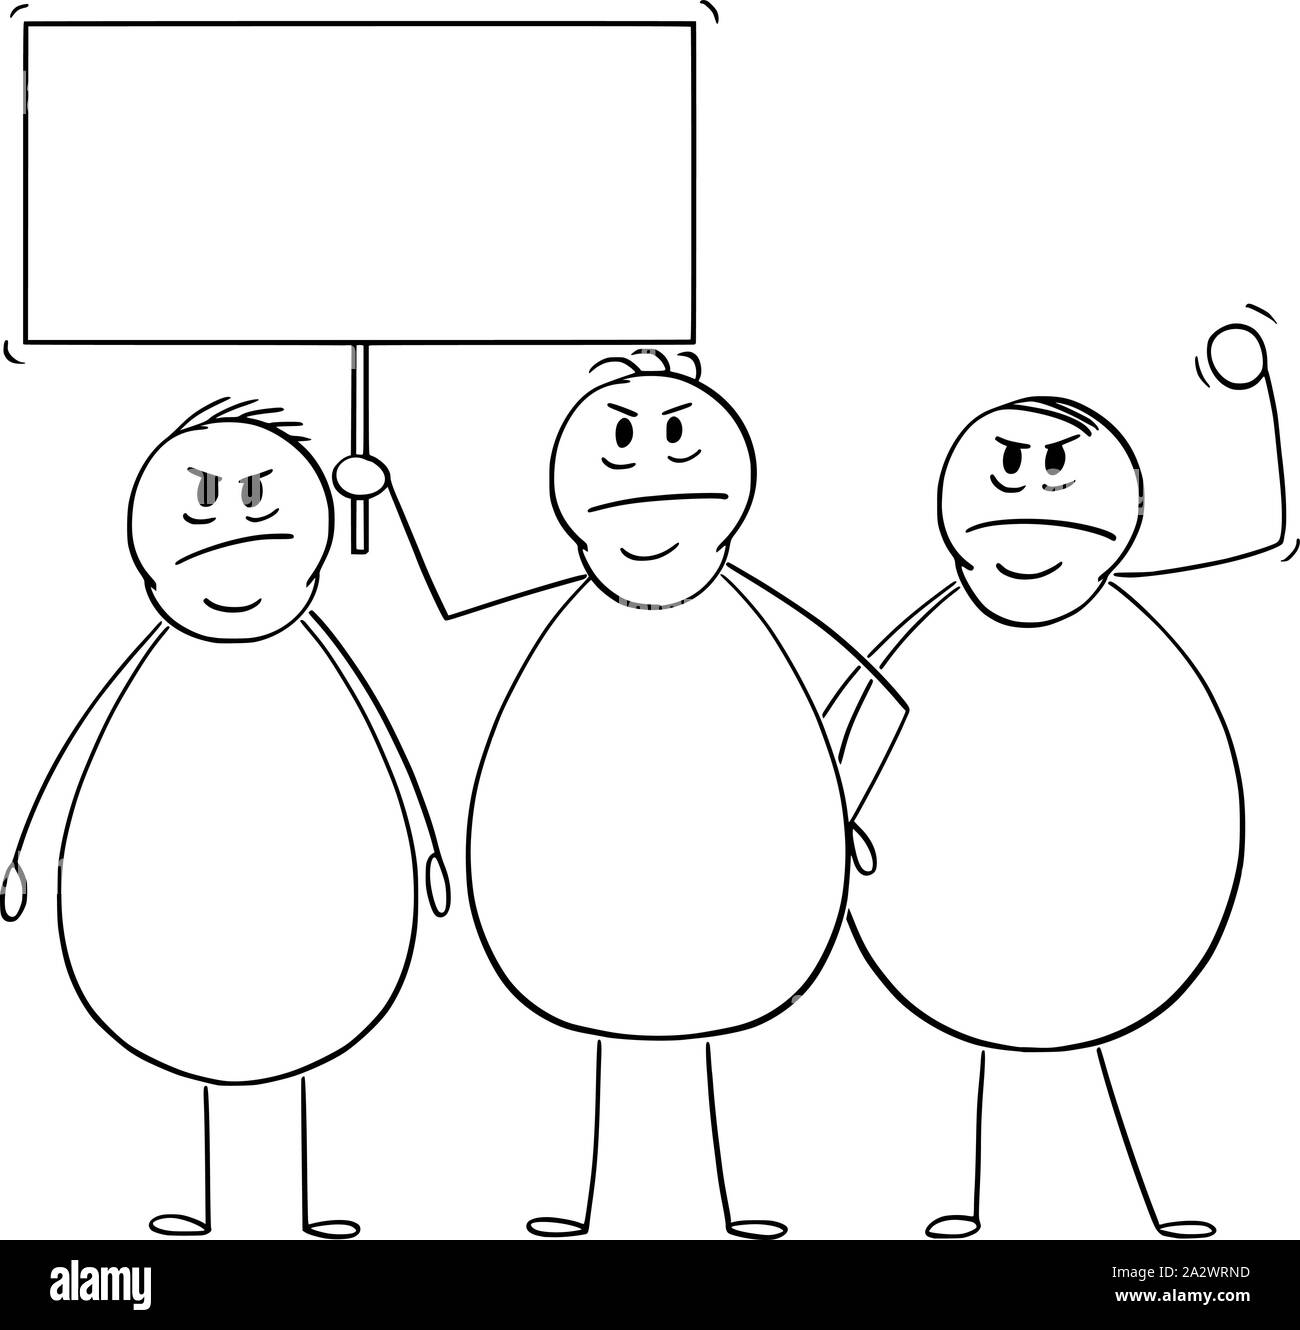 Vektor cartoon Strichmännchen Zeichnen konzeptionelle Darstellung der Gruppe von drei wütend übergewichtig oder Fette Männer demonstrieren oder protestieren mit leeren unterzeichnen. Stock Vektor